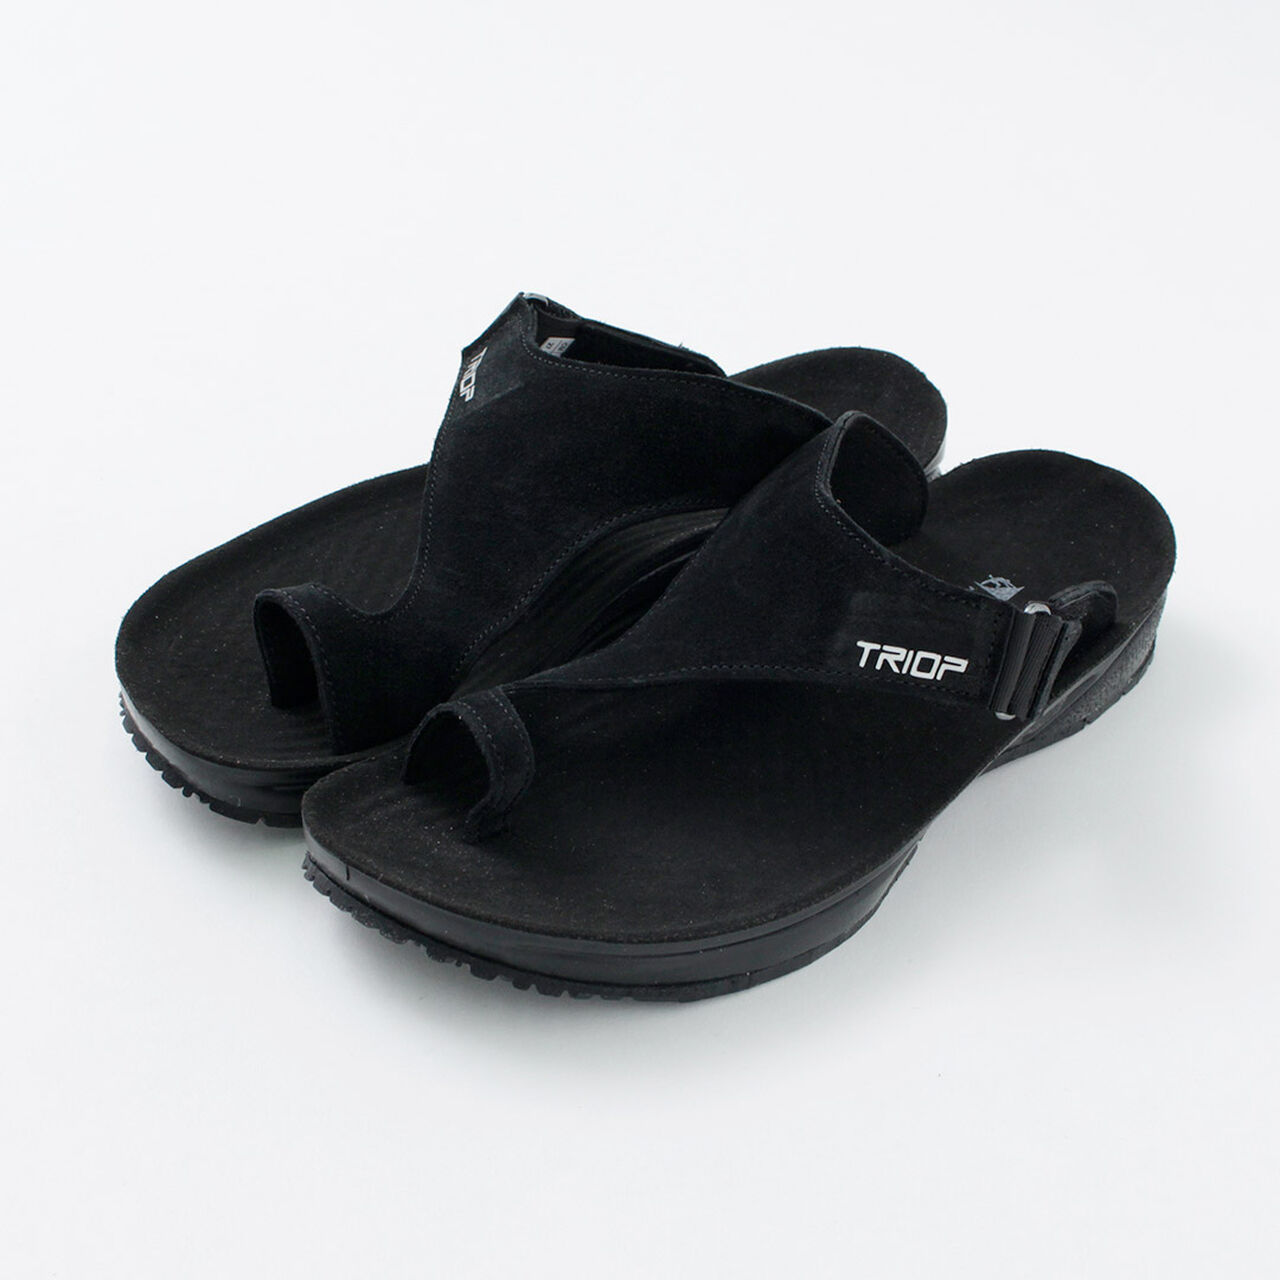 ZENI Sandals,Black, large image number 0